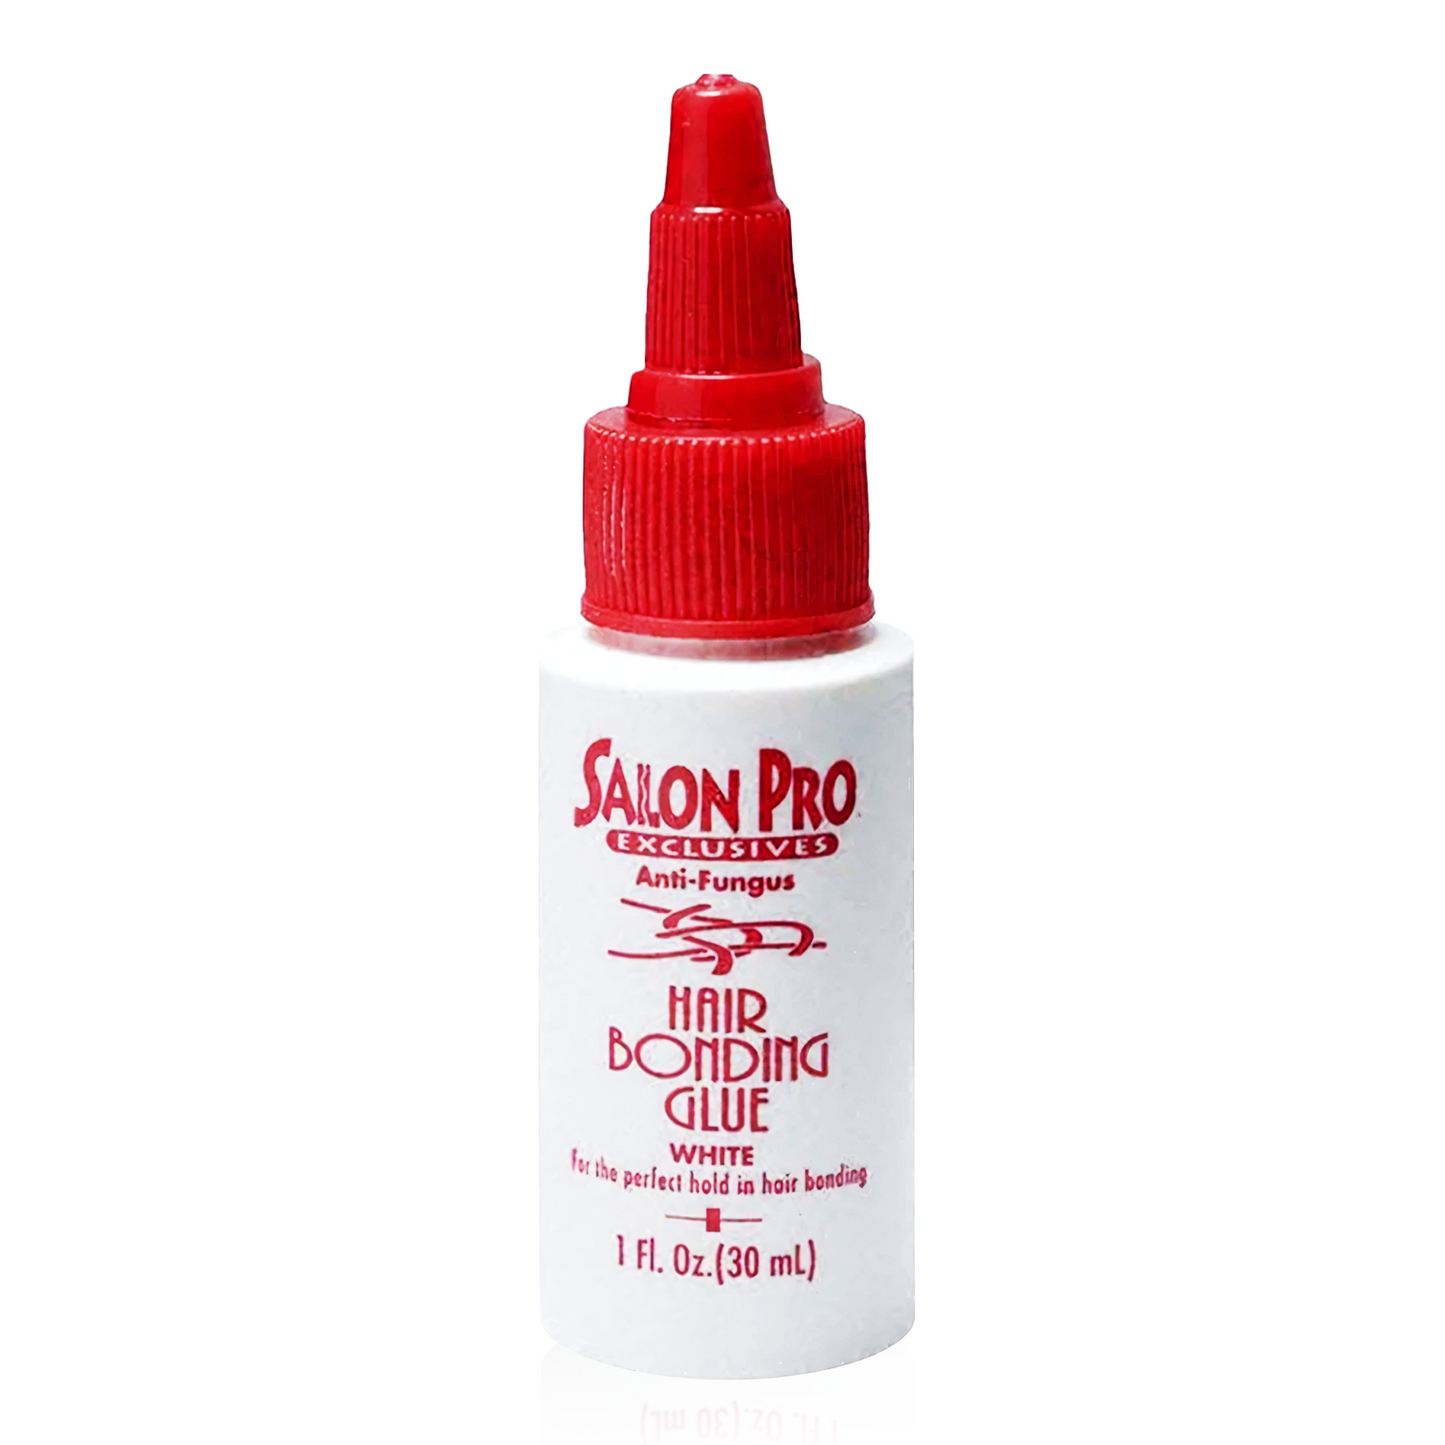 Salon Pro Exclusives Bonding Glue White 1oz